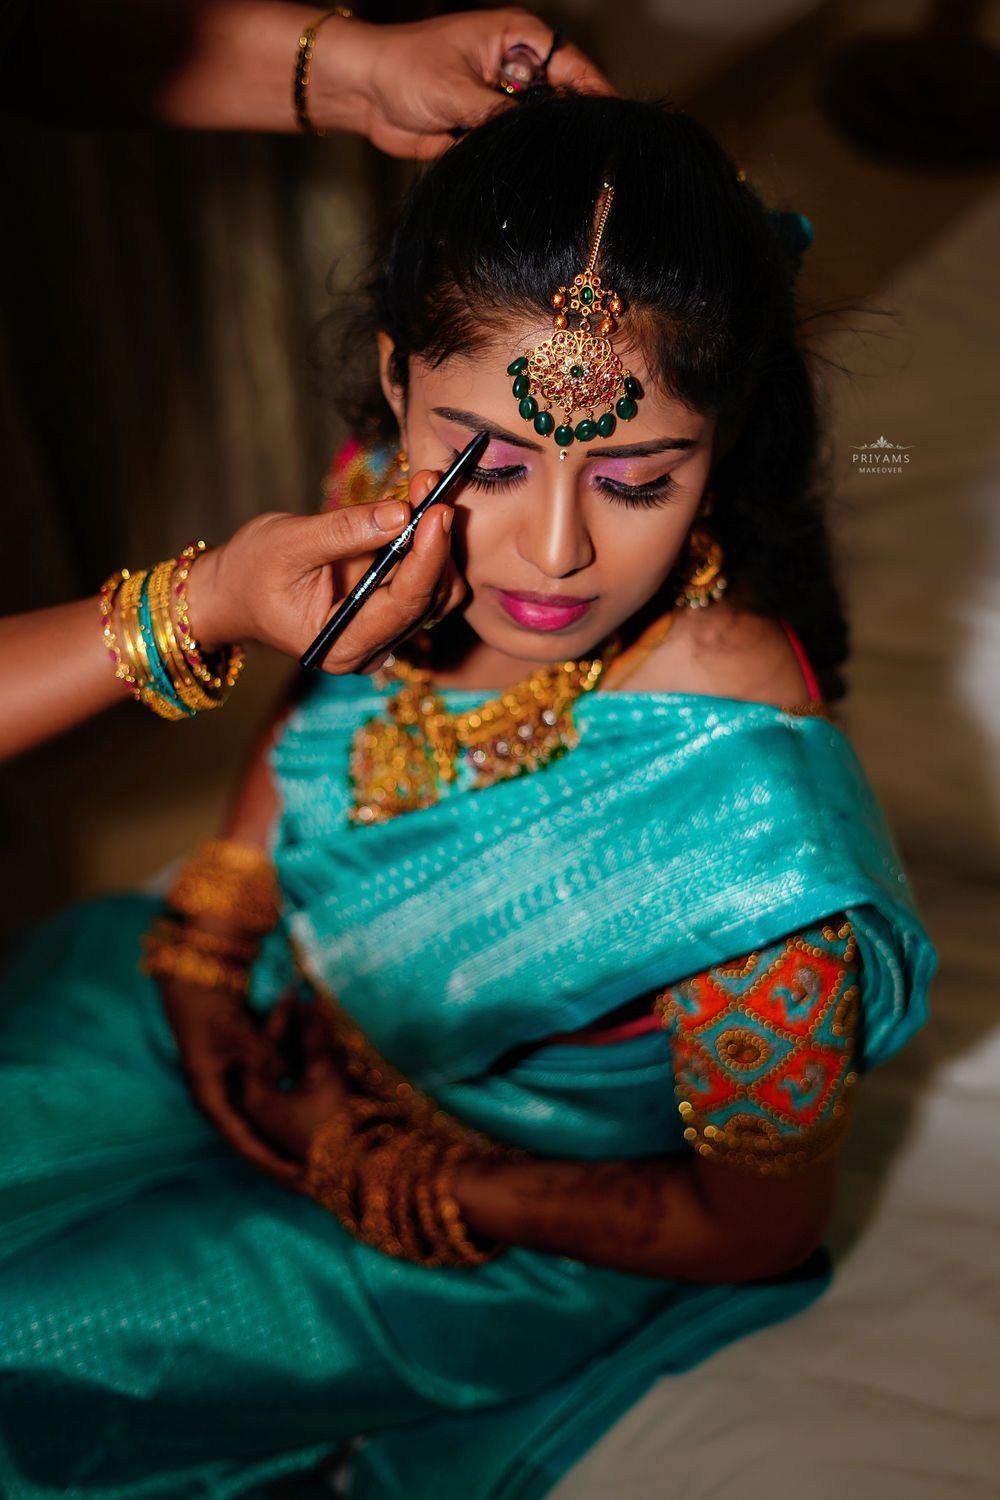 Photo From Bride Nivetha - By Priyams Makeover